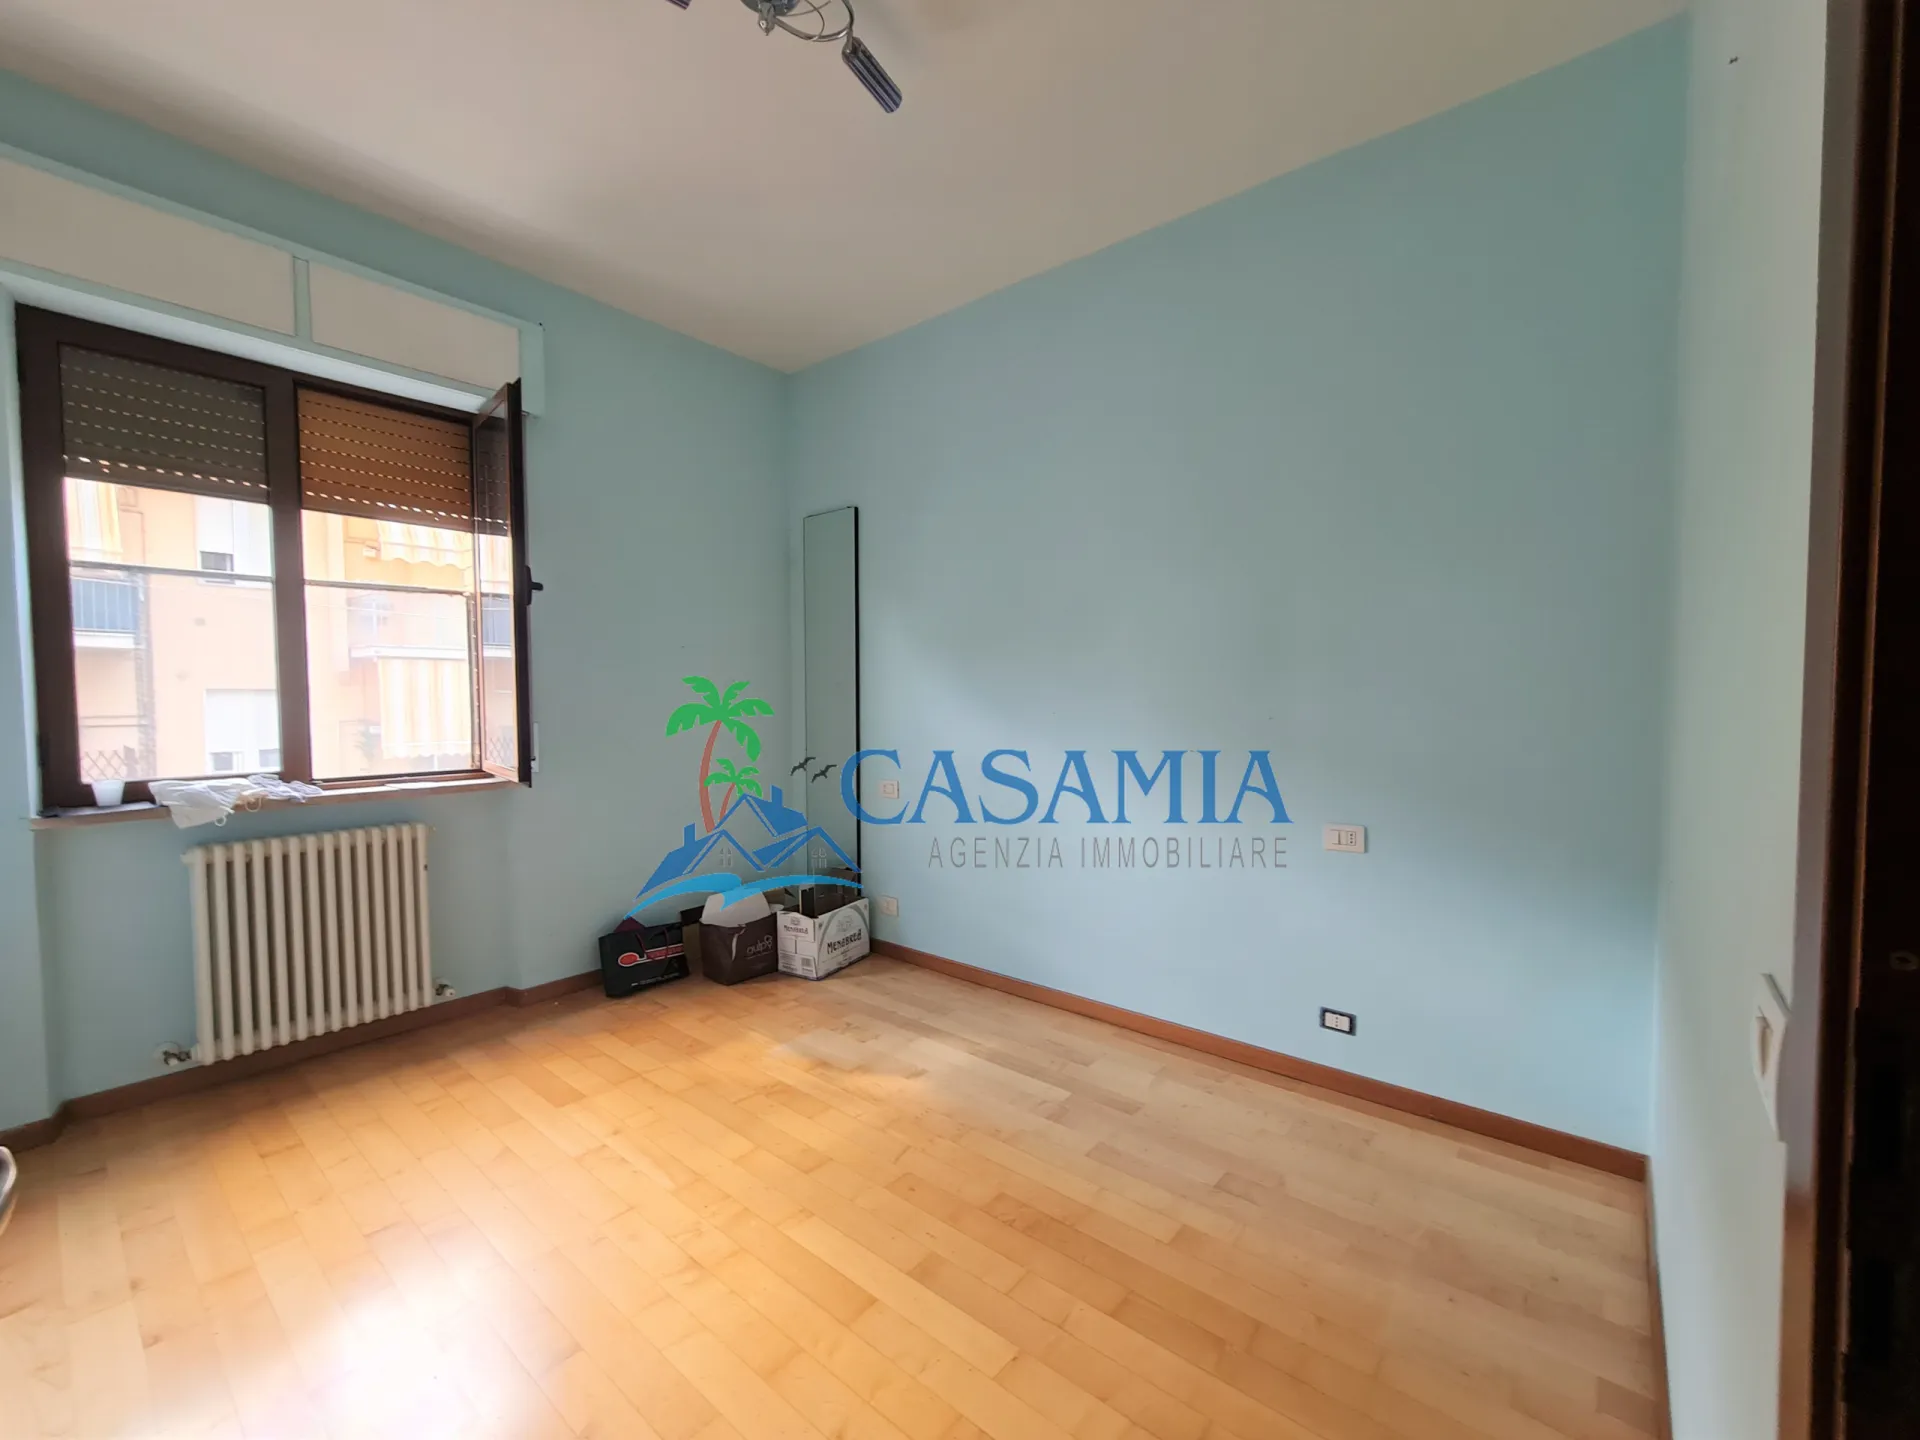 Immagine per Appartamento in vendita a Folignano via Cenciarini